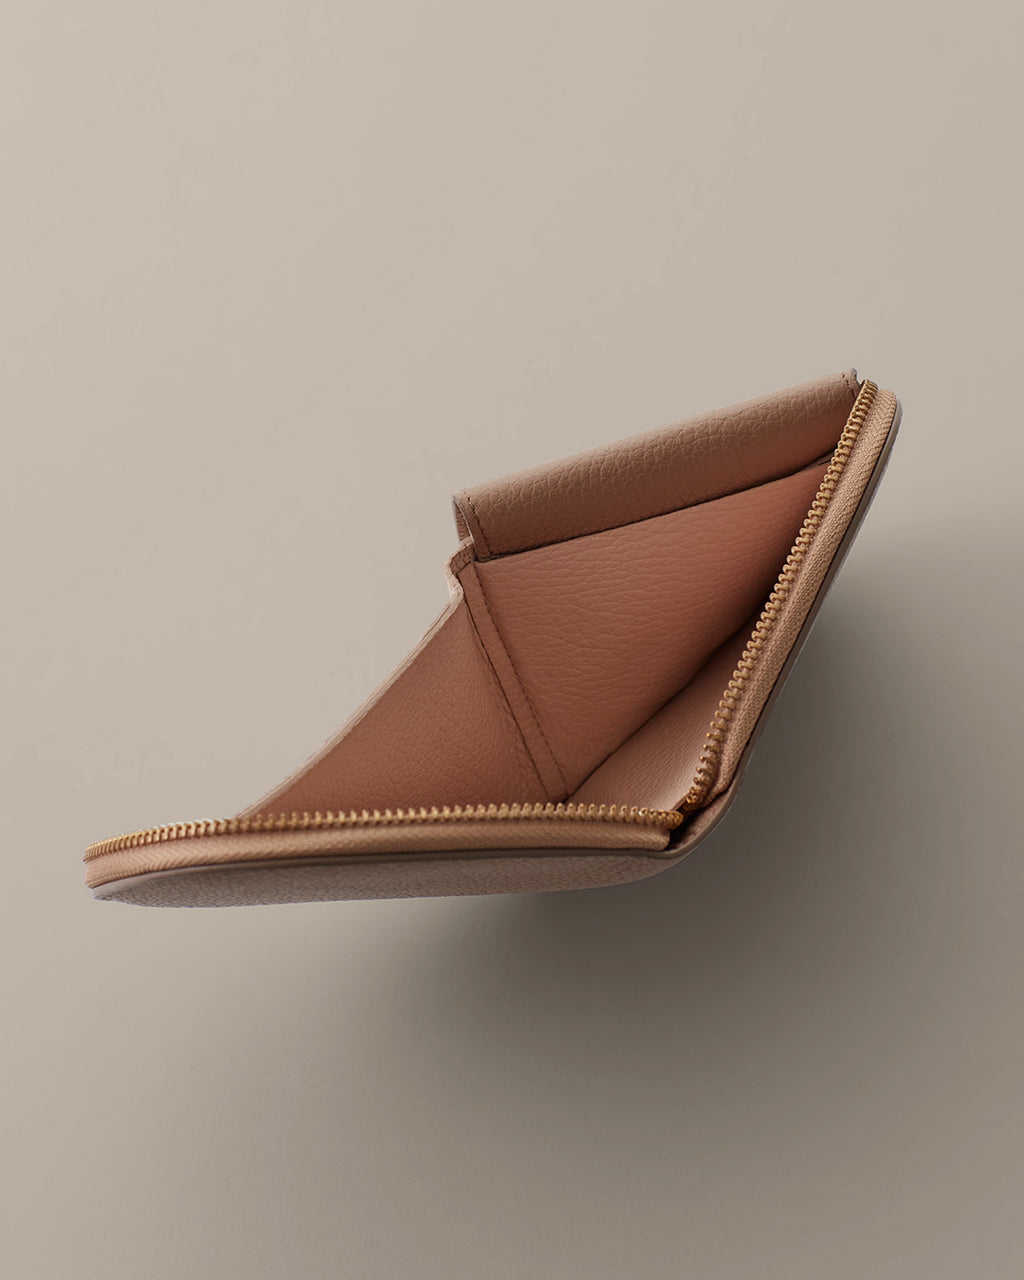 LV Men's Brown Leather Wallet square design